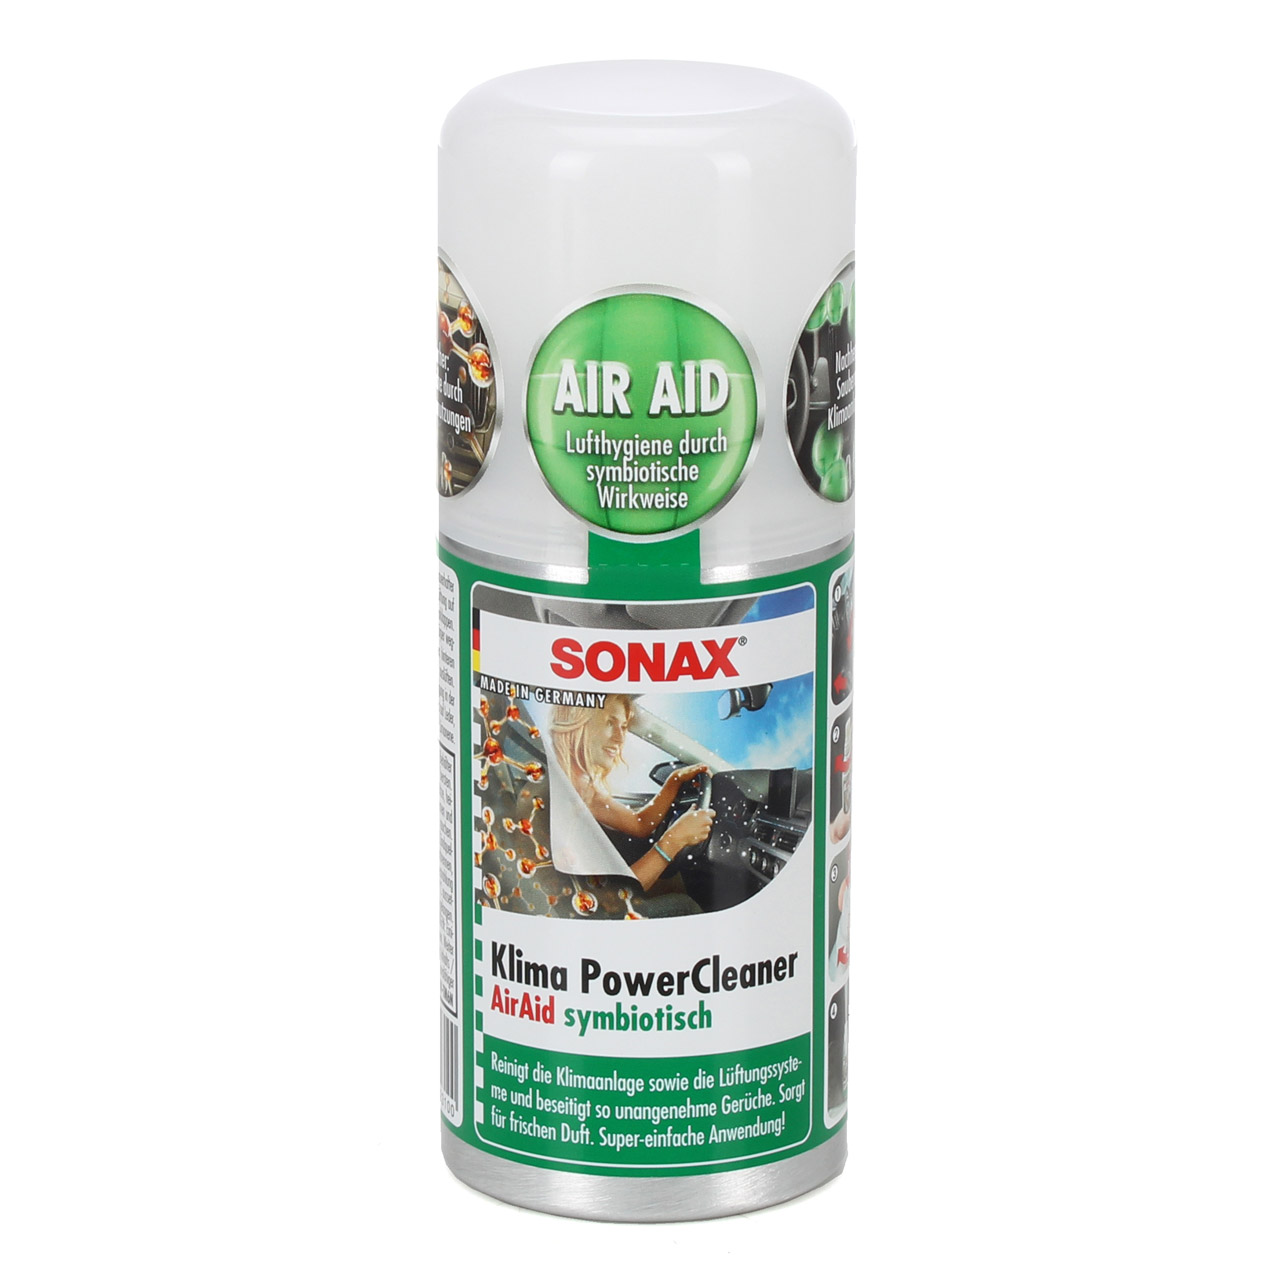 FLOWMAXX Autopflegeshop - SONAX PROFILINE Klimaanlagenreiniger 400ml